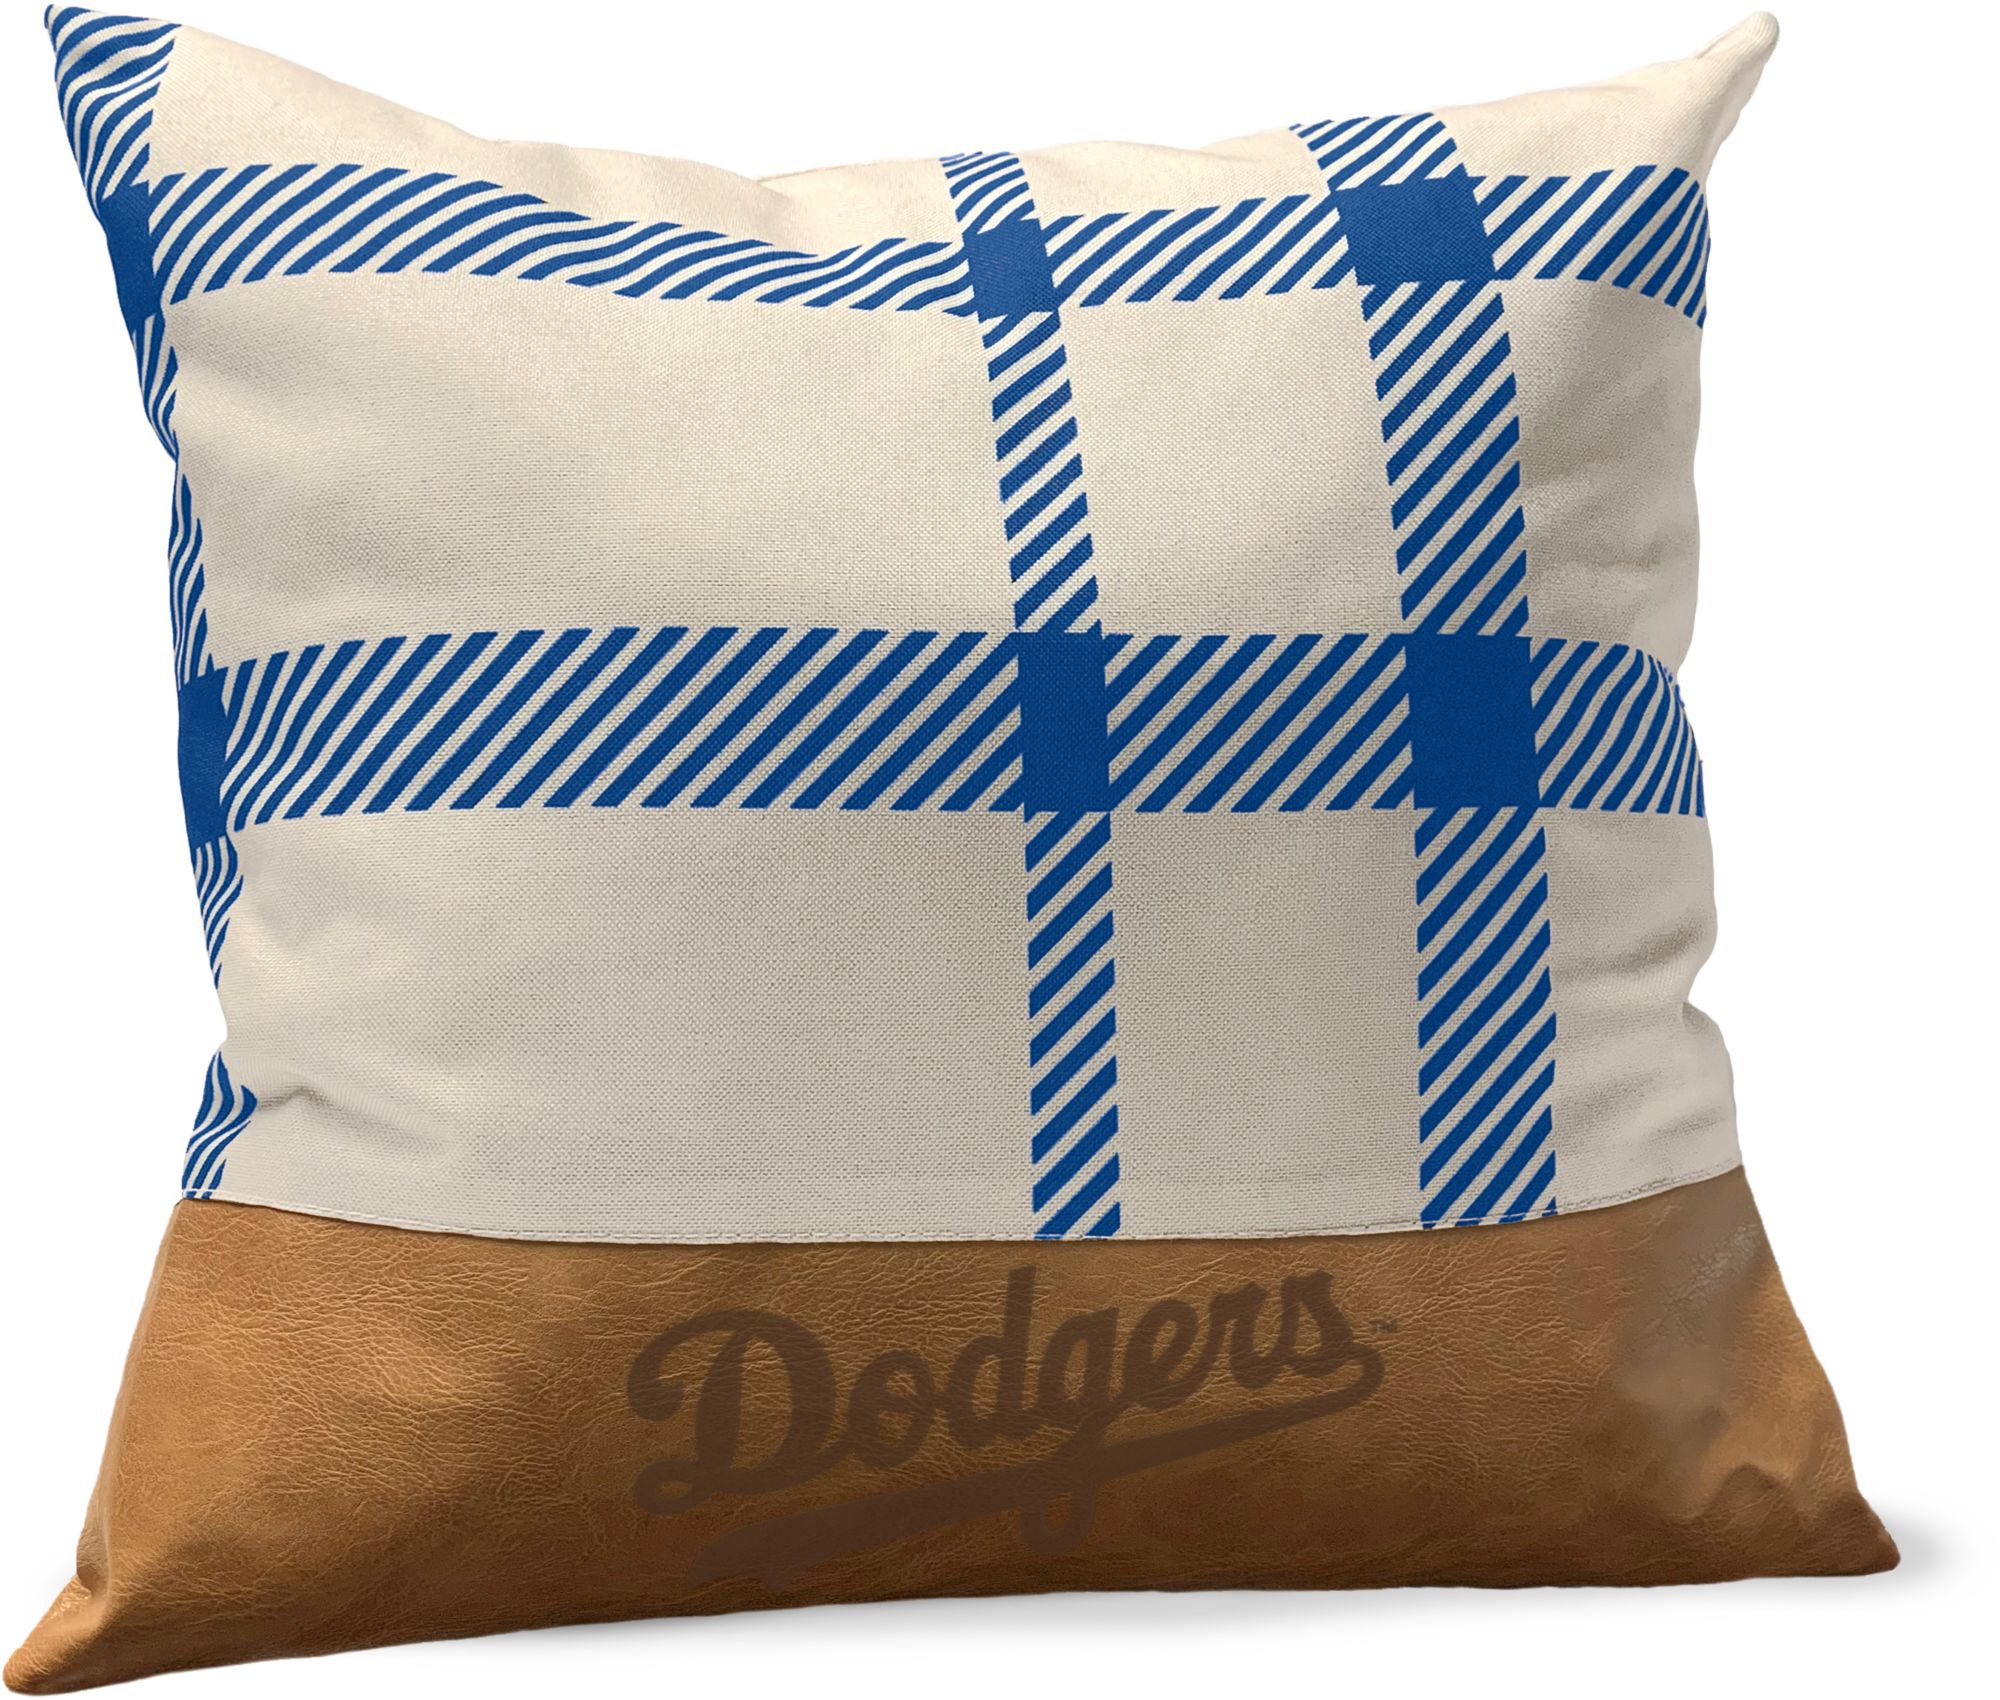 Pegasus Sports Los Angeles Dodgers Faux Leather Pillow